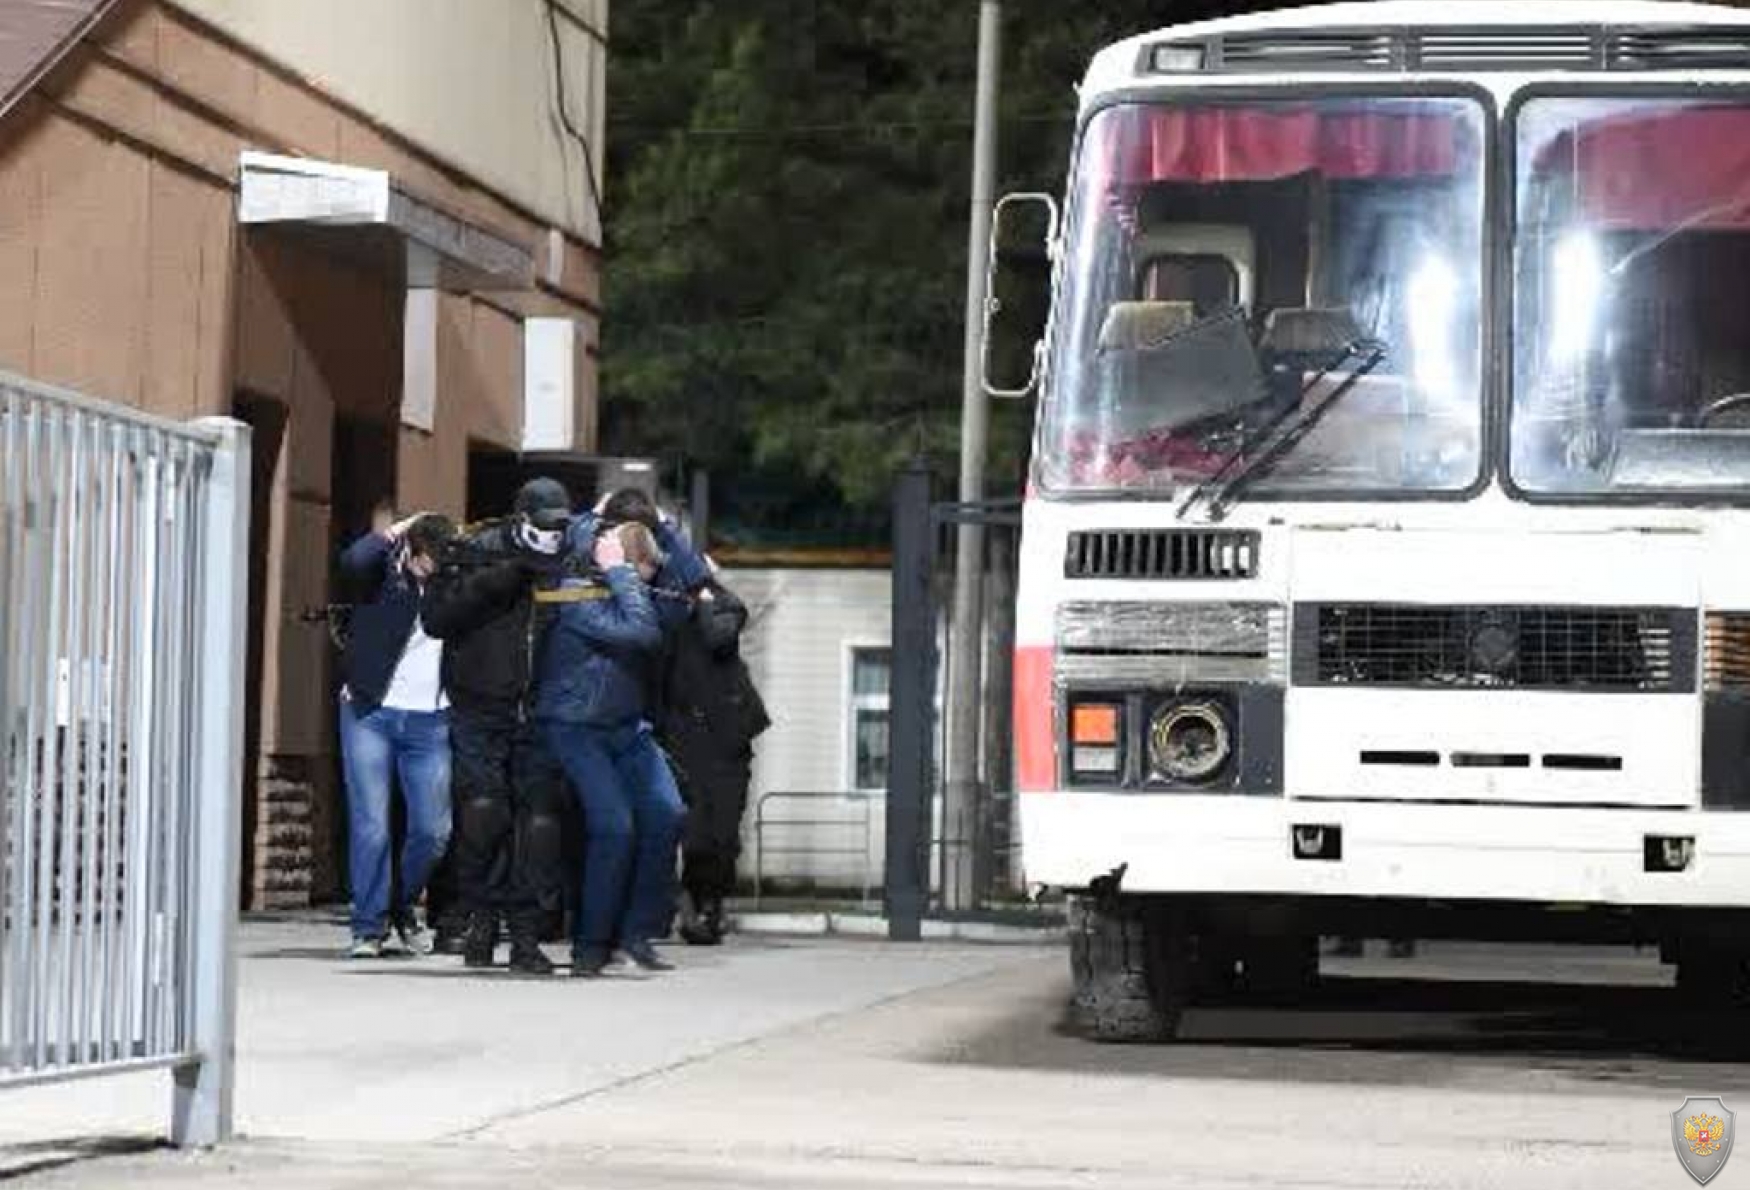 Террористы под прикрытием заложников переходят из захваченного помещения в автобус 